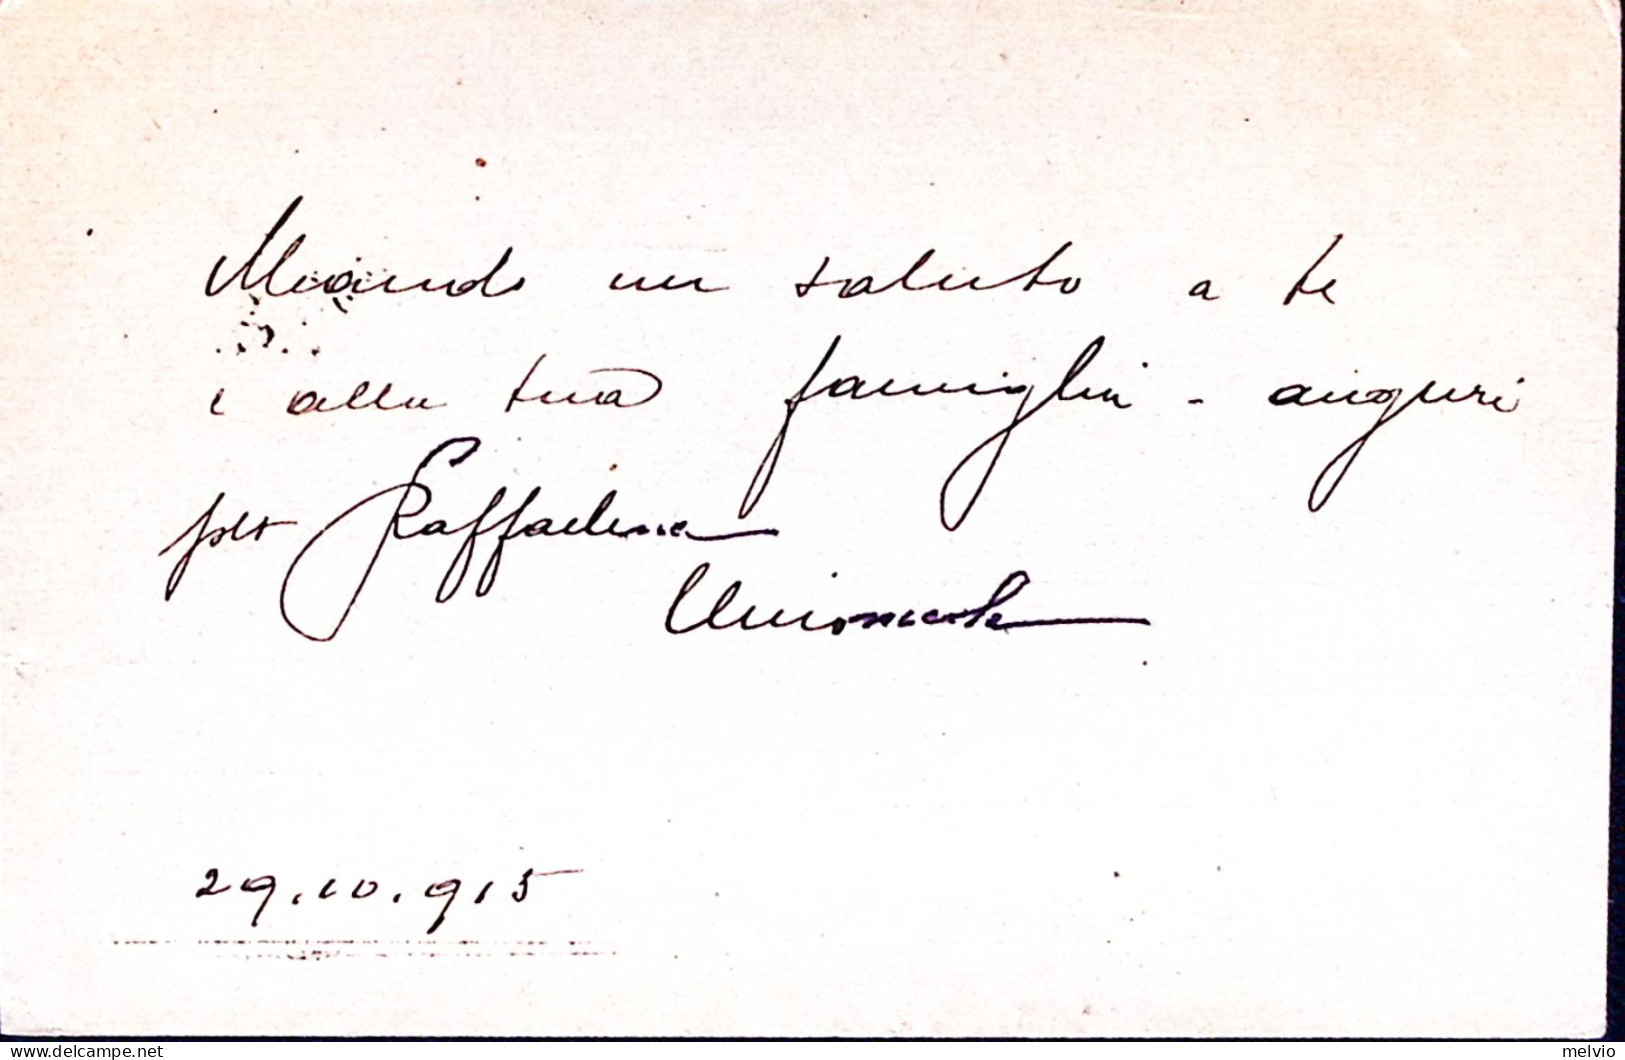 1915-17^ COMPAGNIA TELEGRAFISTI M.M. Cartolina Franchigia Non Ufficiale Posta Mi - War 1914-18